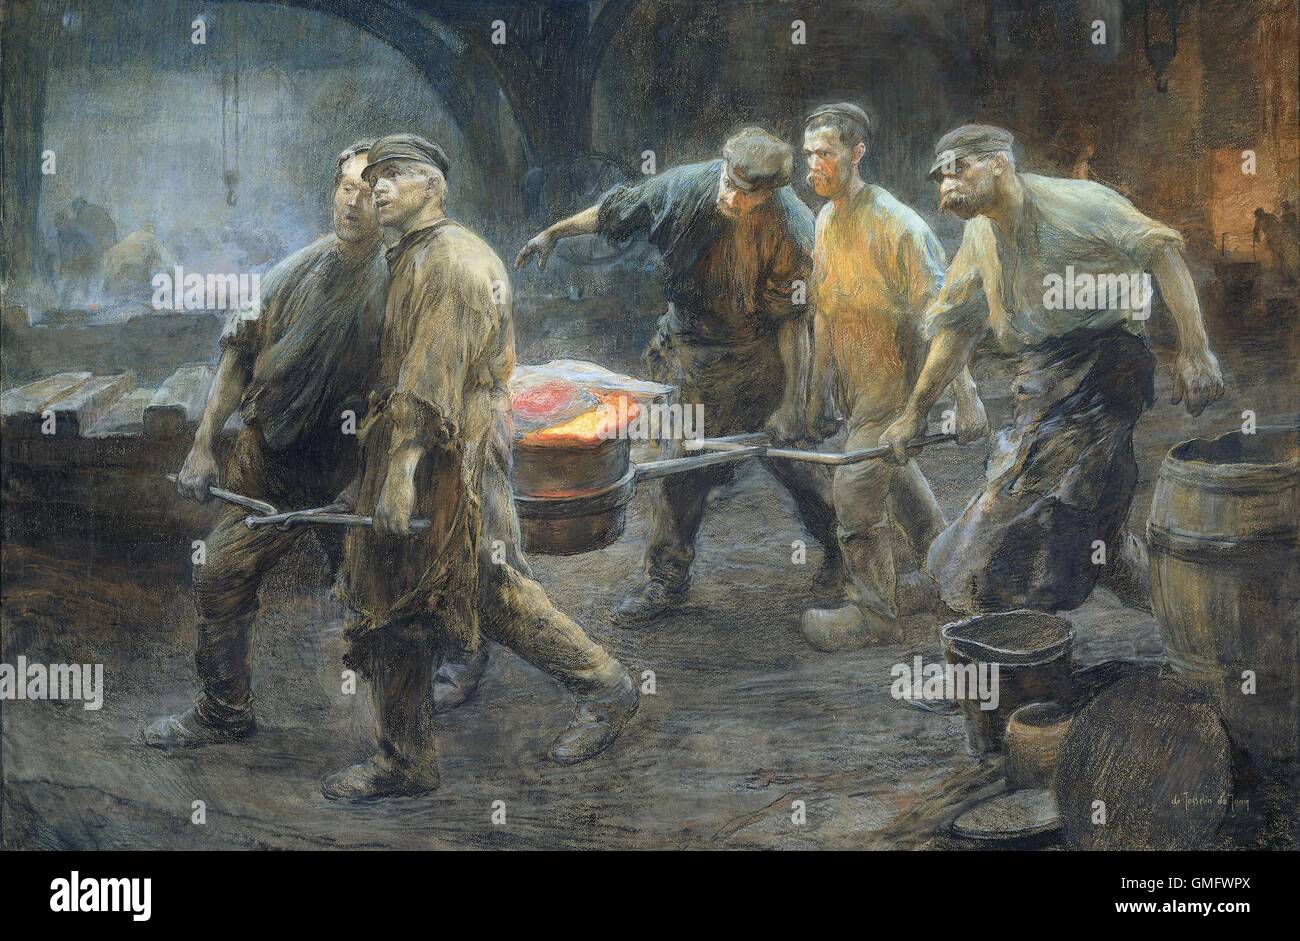 Interno di una fonderia di ferro, di Pieter de Josselin de Jong, 1880-1900, olandese la pittura ad acquerello. Cinque lavoratori portano un crogiolo di incandescente metallo fuso. (BSLOC 2016 1 70) Foto Stock